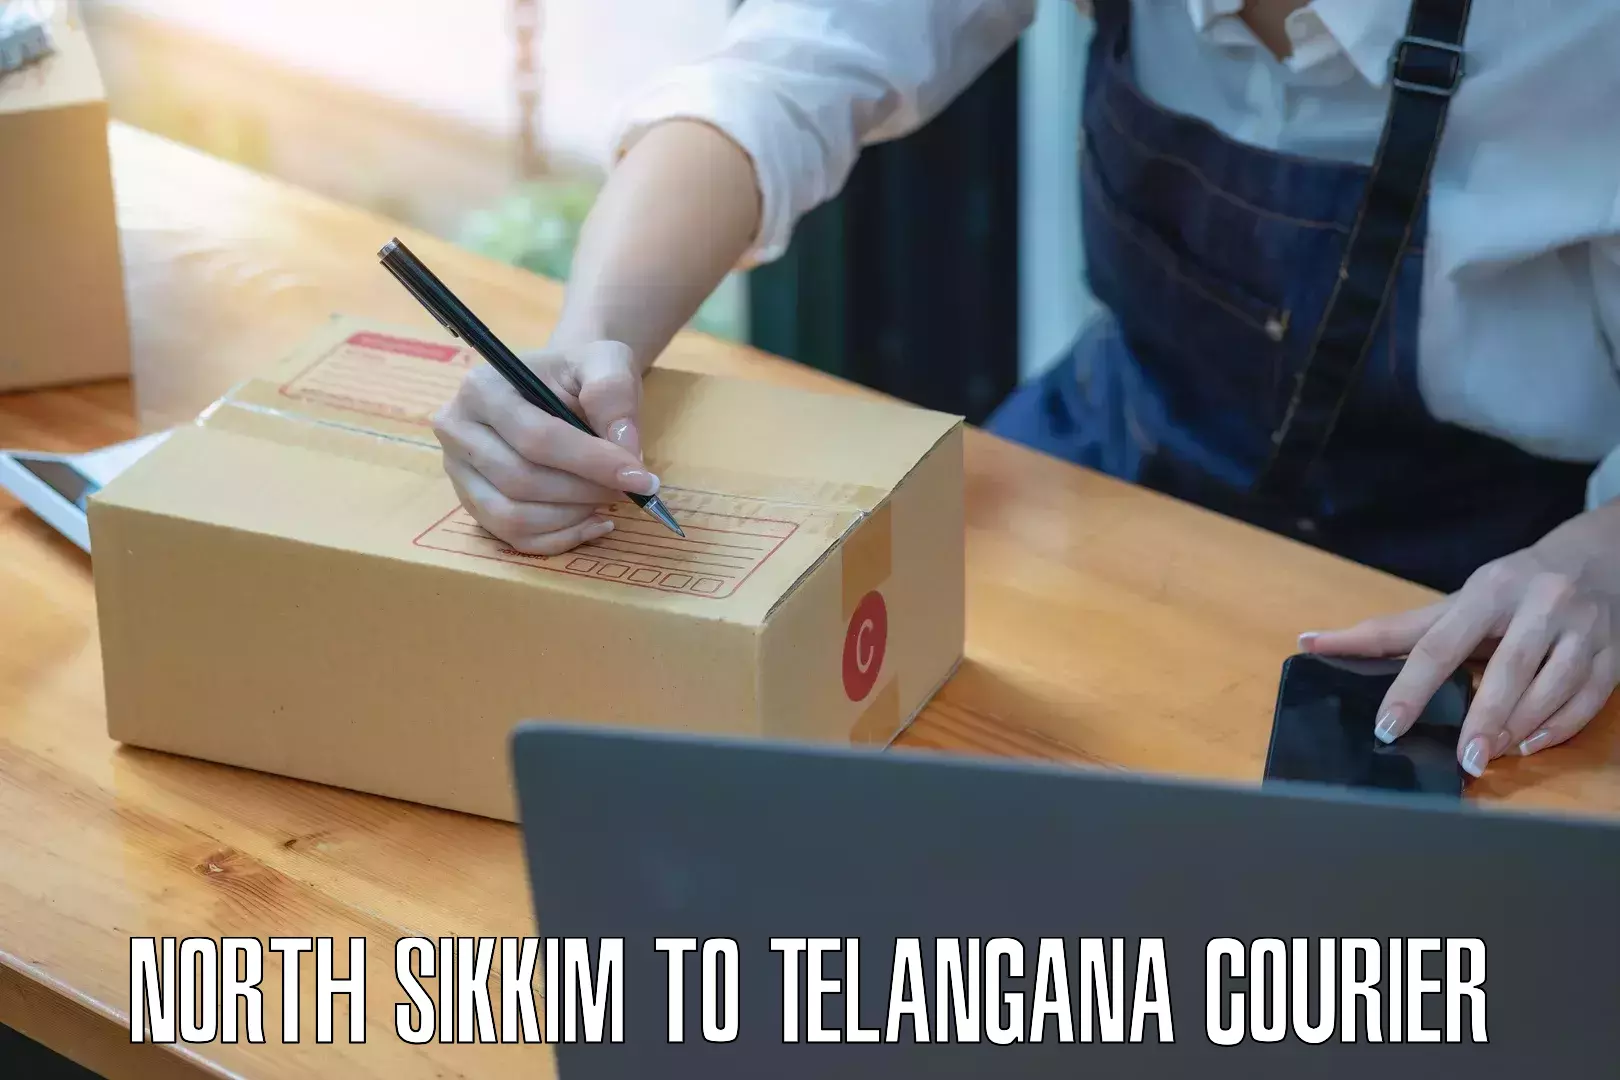 Custom courier strategies North Sikkim to Telangana